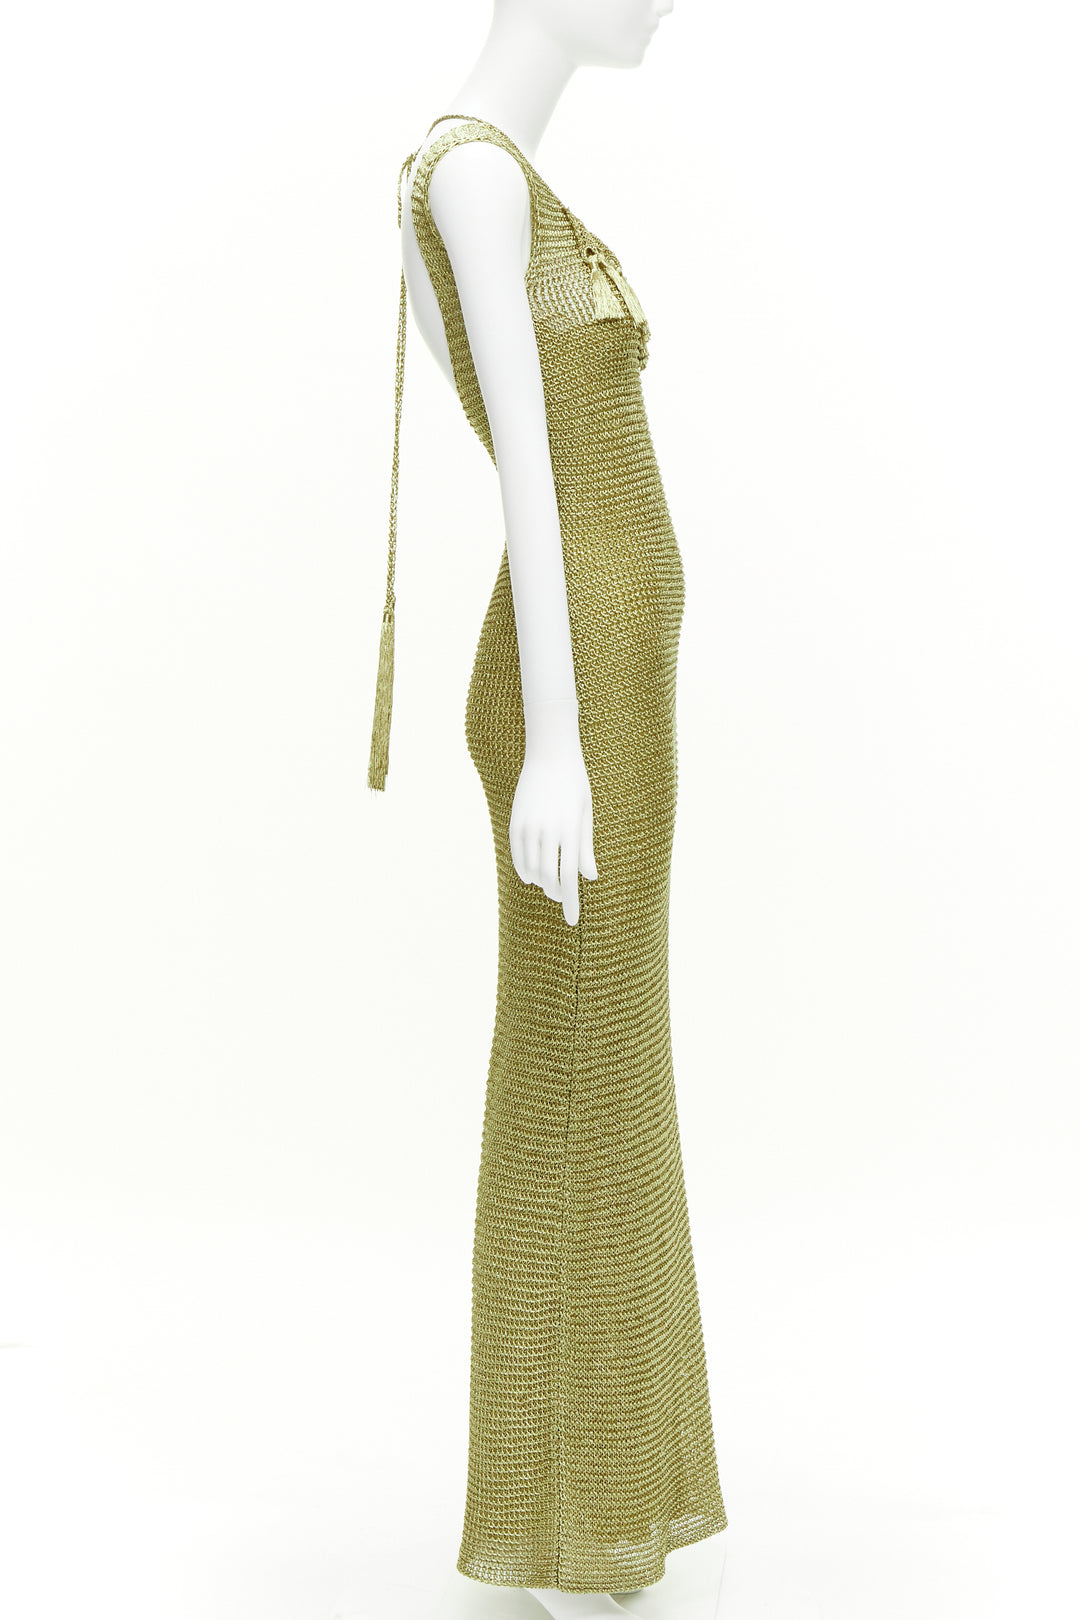 RALPH LAUREN PURPLE LABEL hand knit gold tassel crochet evening gown dress XS